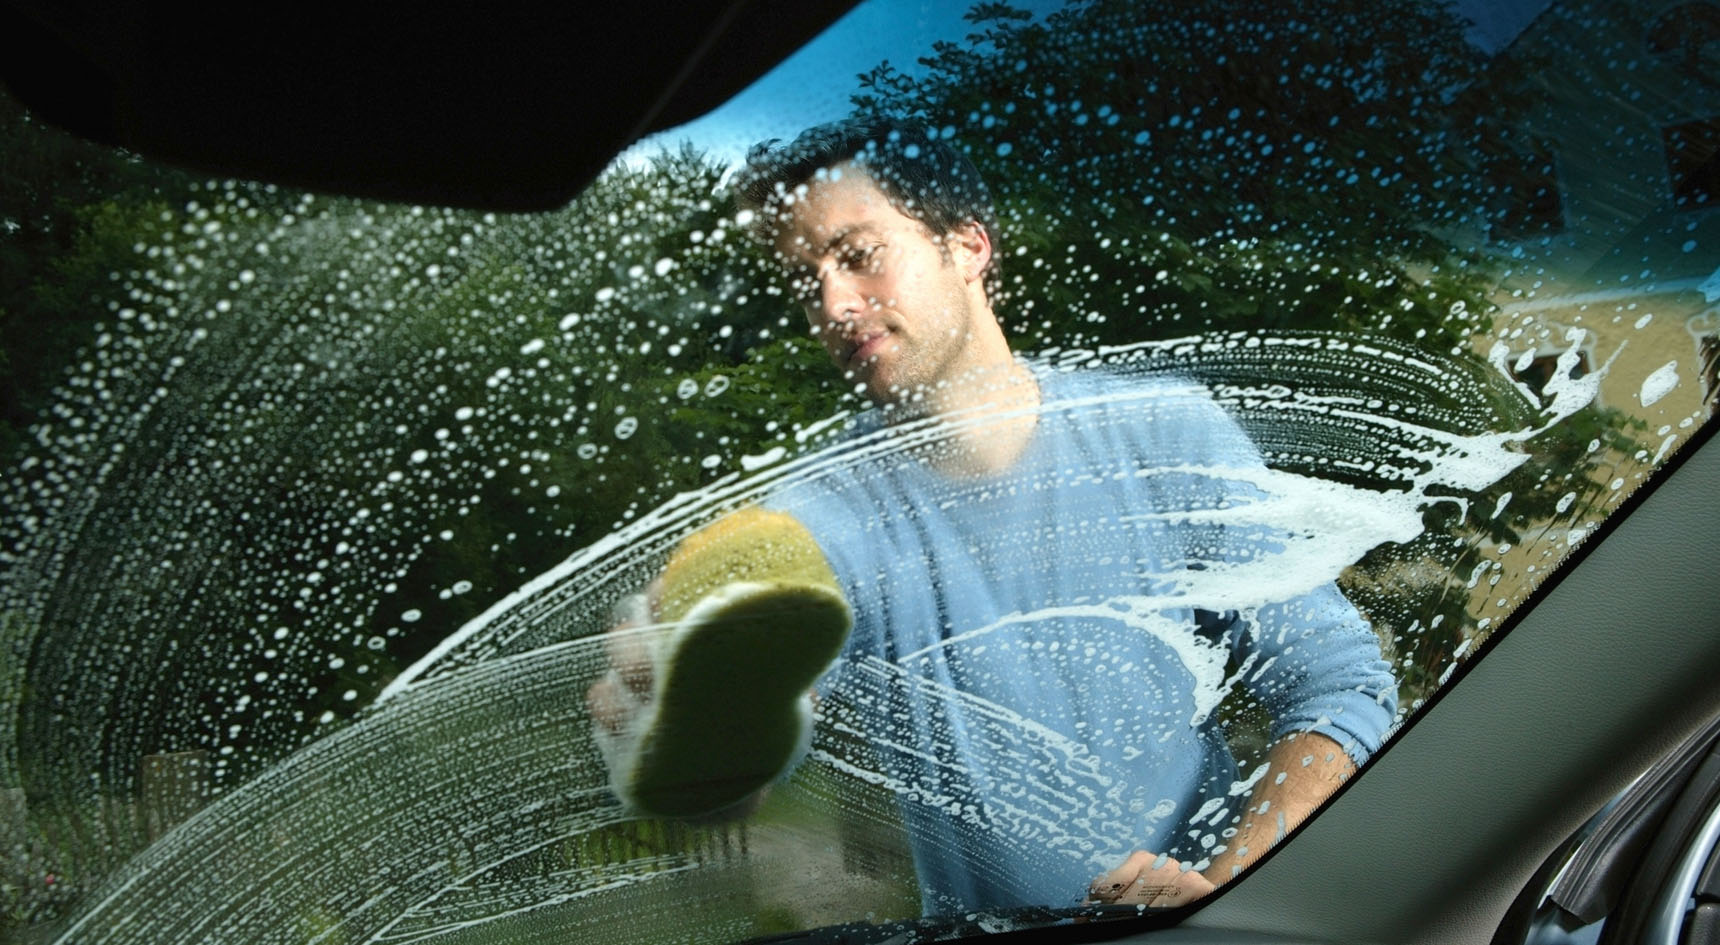 A man washing his windscreen